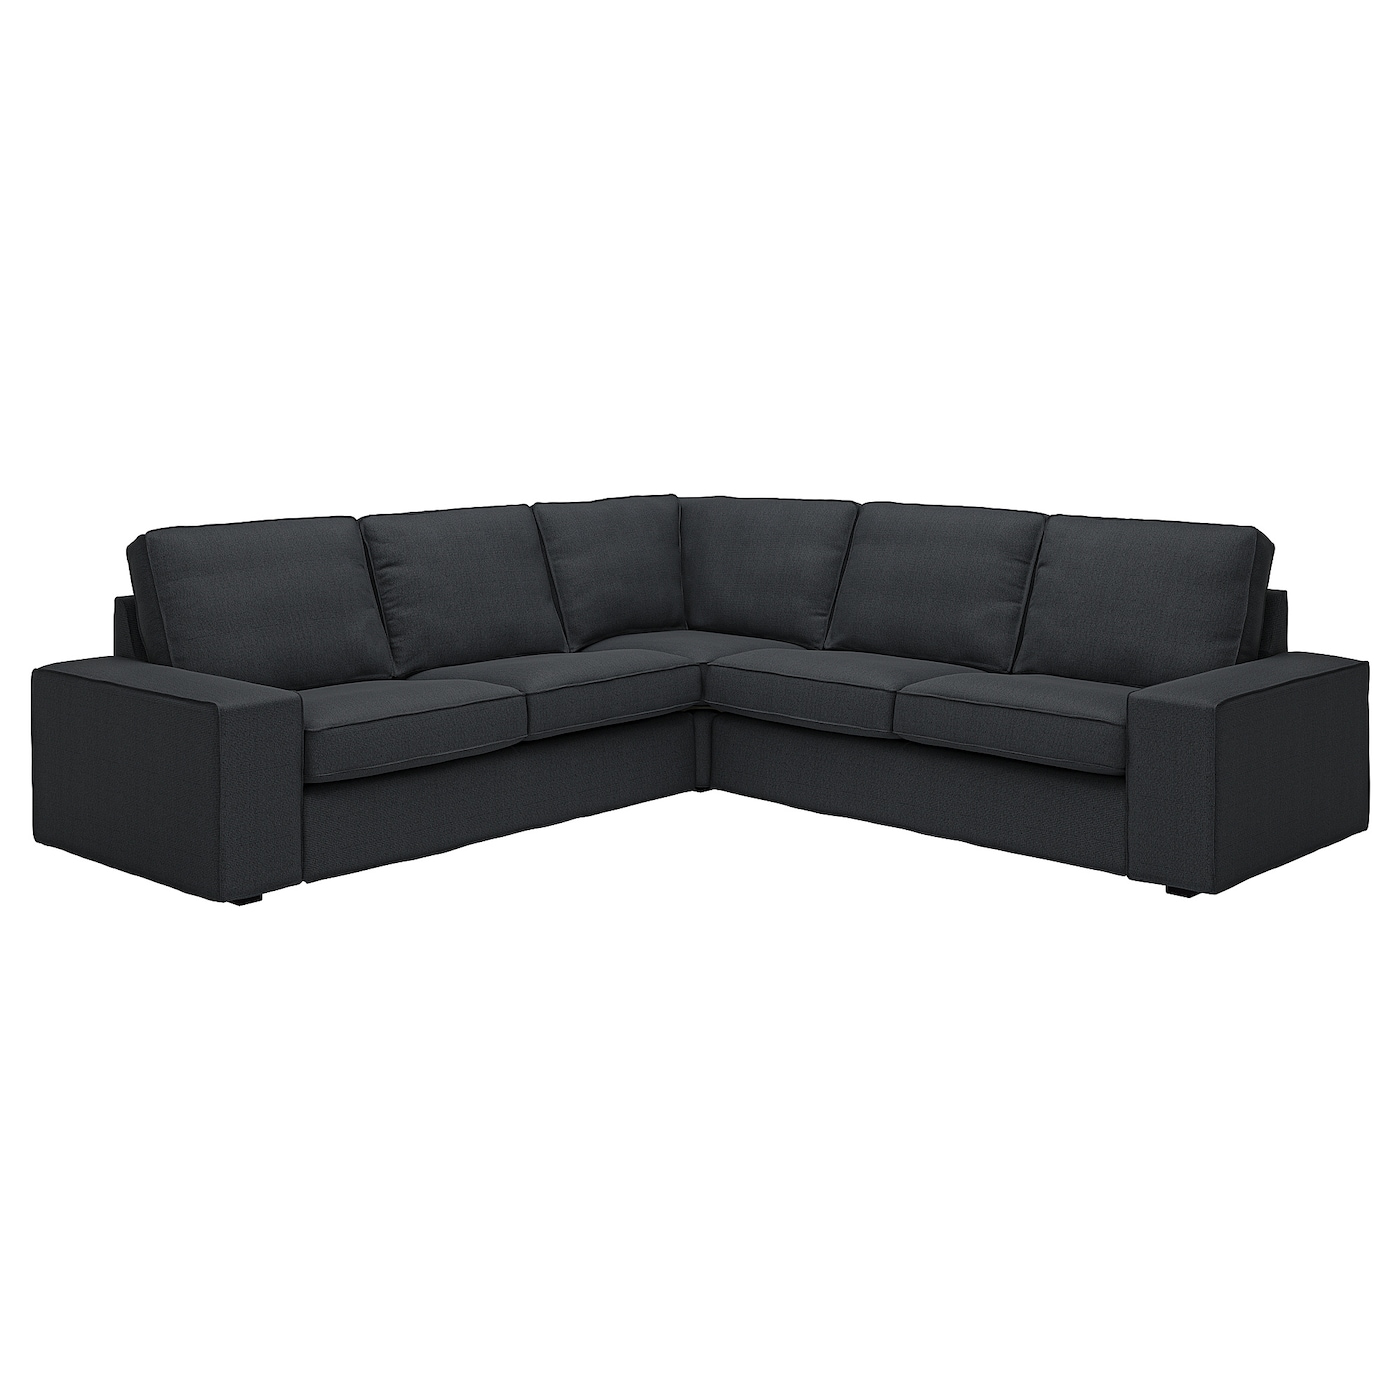 4-местный угловой диван - IKEA KIVIK, 83x95x257см, черный, КИВИК ИКЕА